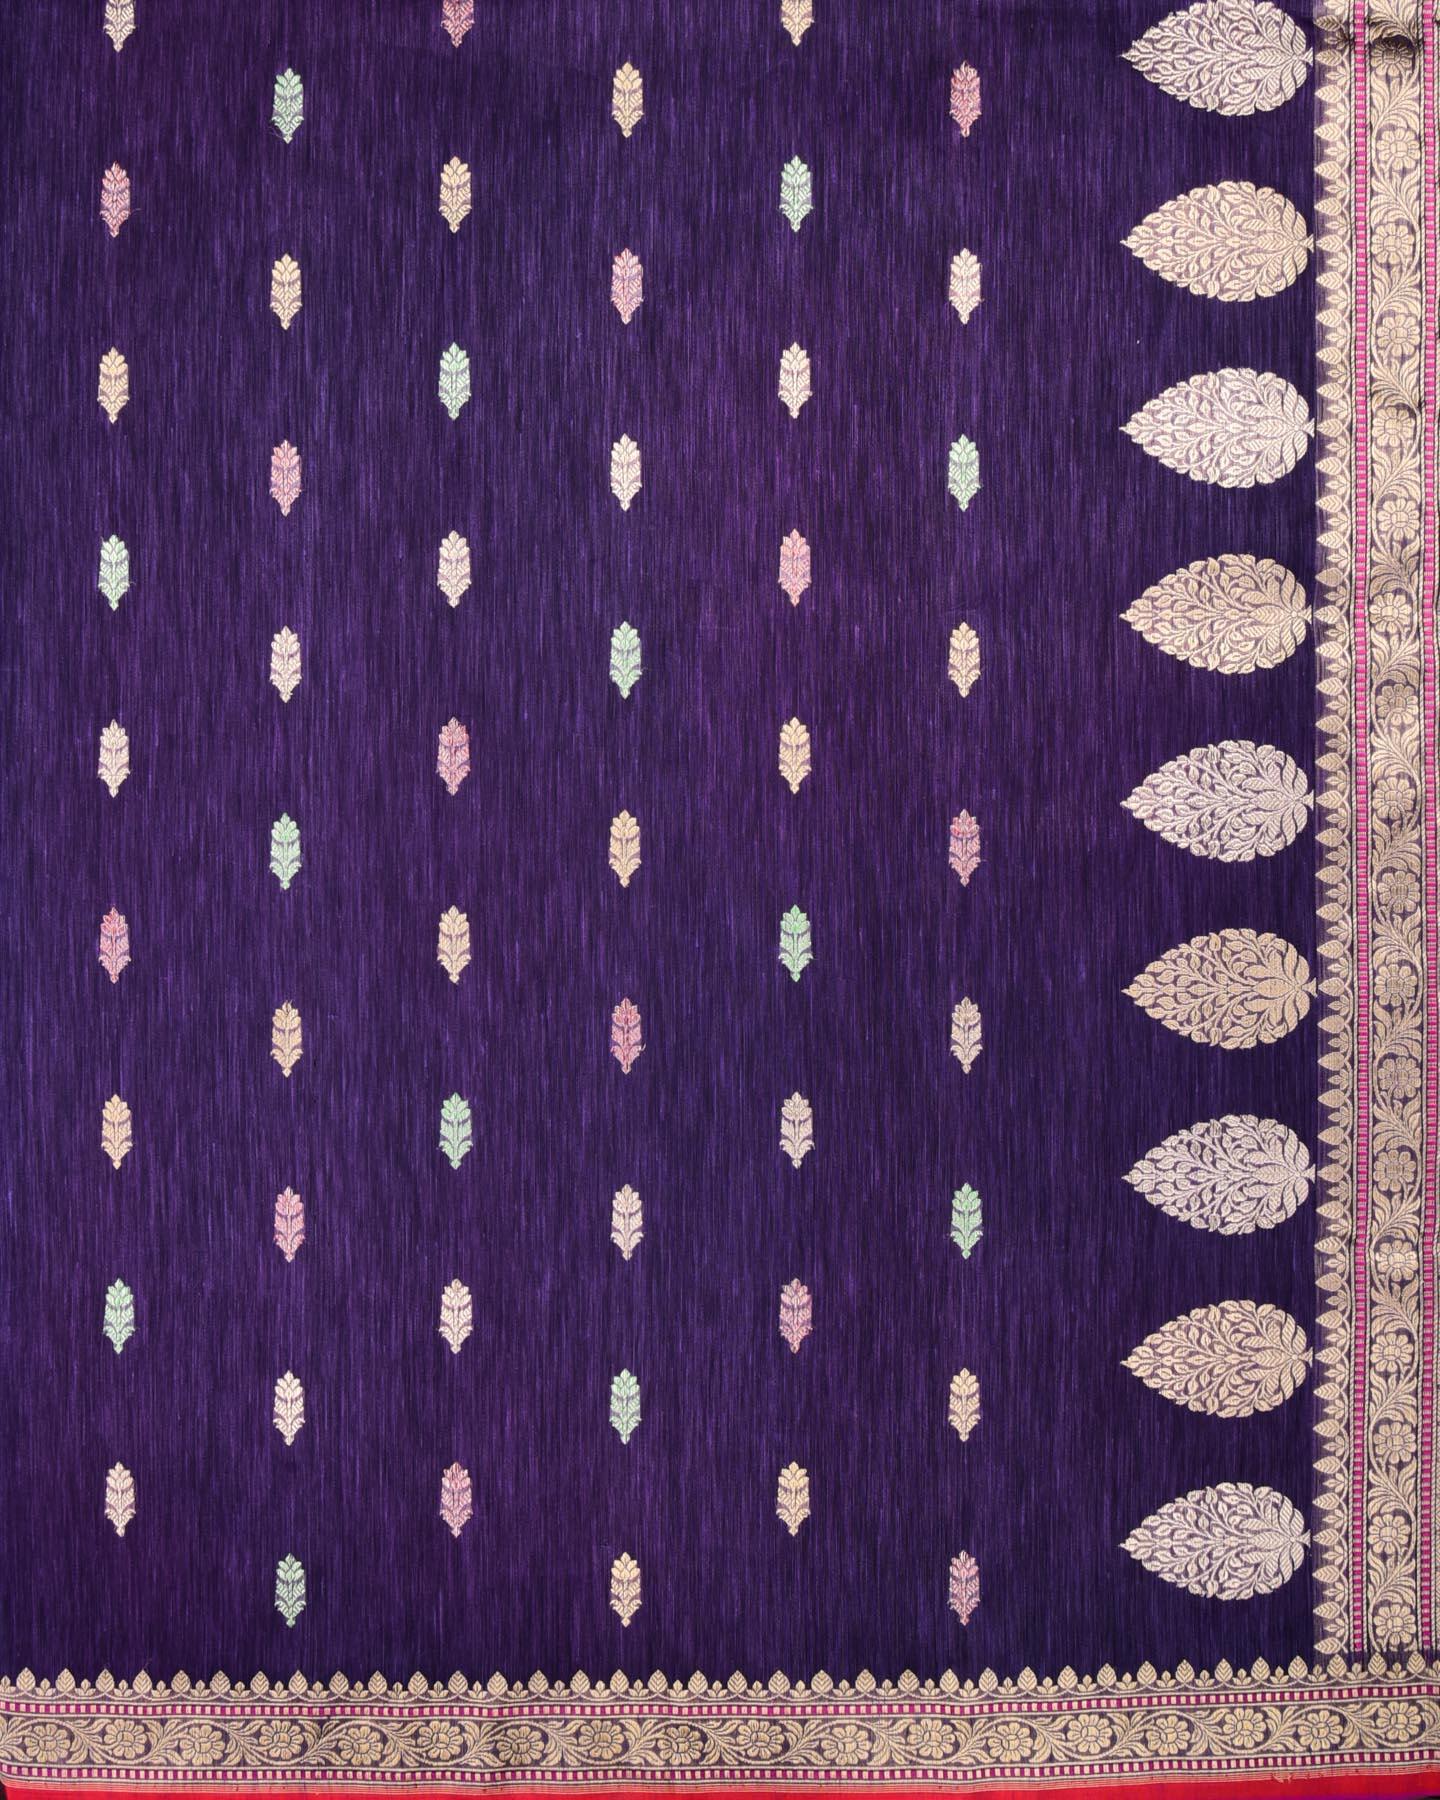 Deep Lilac Banarasi Colored Zari Buti Kadhuan Brocade Handwoven Linen Silk Saree with 2-tone Selvage - By HolyWeaves, Benares